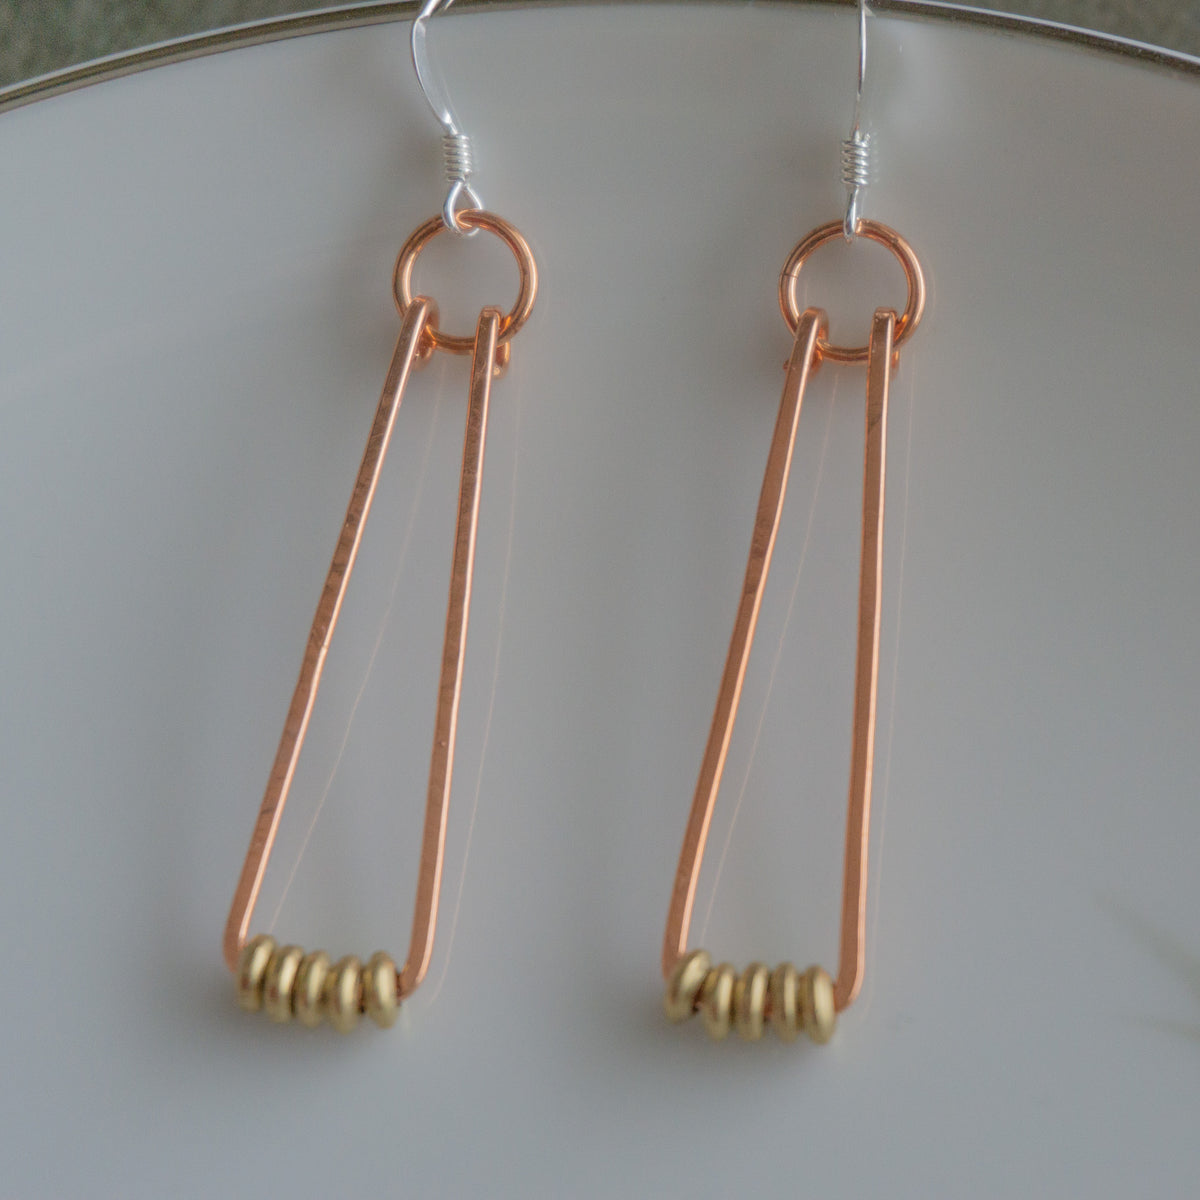 Swing Earrings - Copper Mixed Metal